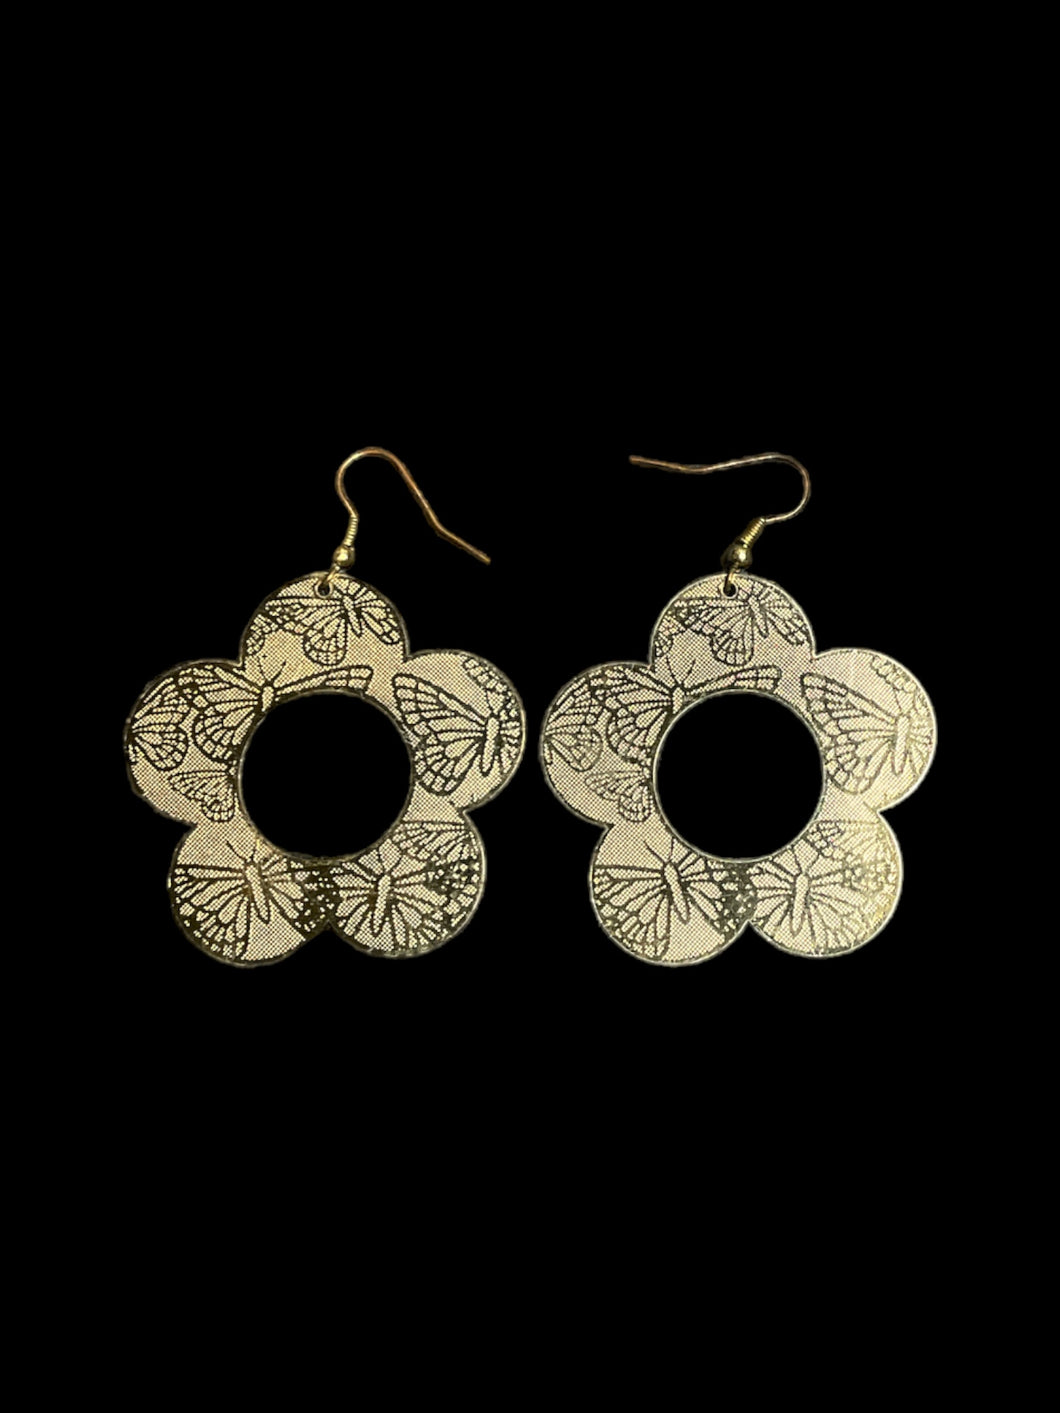 Silver like thin flower shaped earrings w/ butterfly design